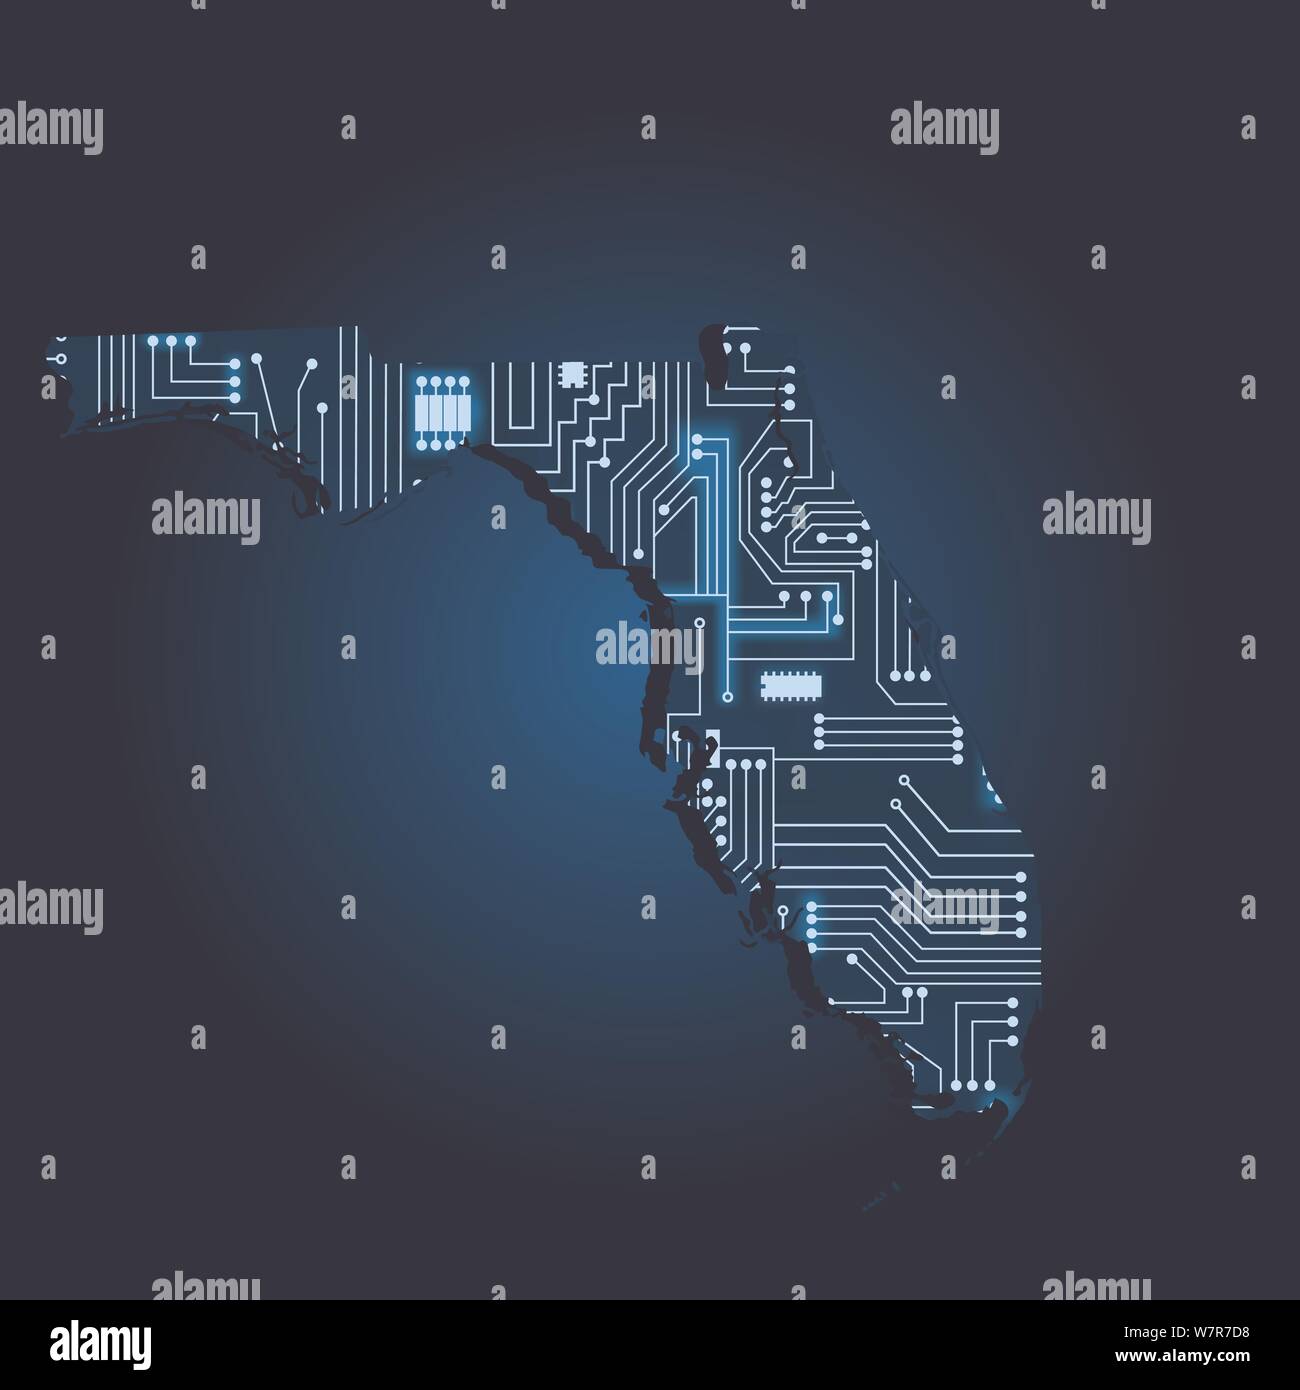 Kontur karte von Florida mit einem Technische Elektronik Schaltung. USA Staat. Blauen Hintergrund. Stock Vektor